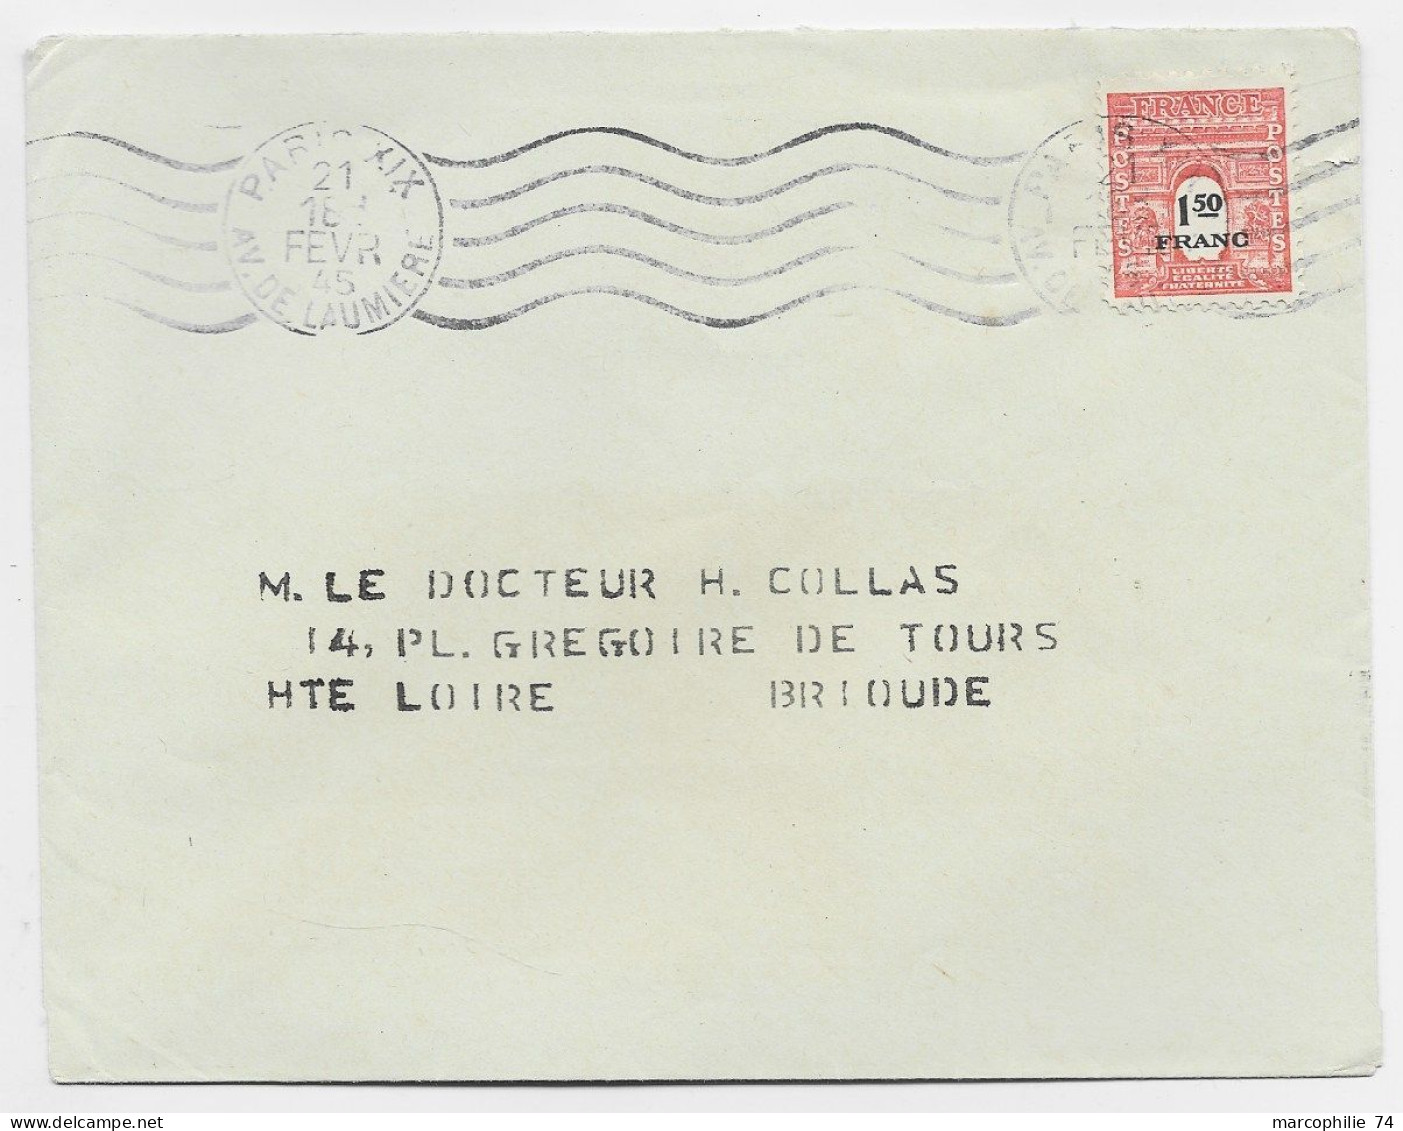 FRANCE ARC TRIOMPHE 1FR50 SEUL LETTRE MEC PARIS XII 21 FEVR 1945 USAGE COURT 17 JOURS - 1944-45 Triomfboog